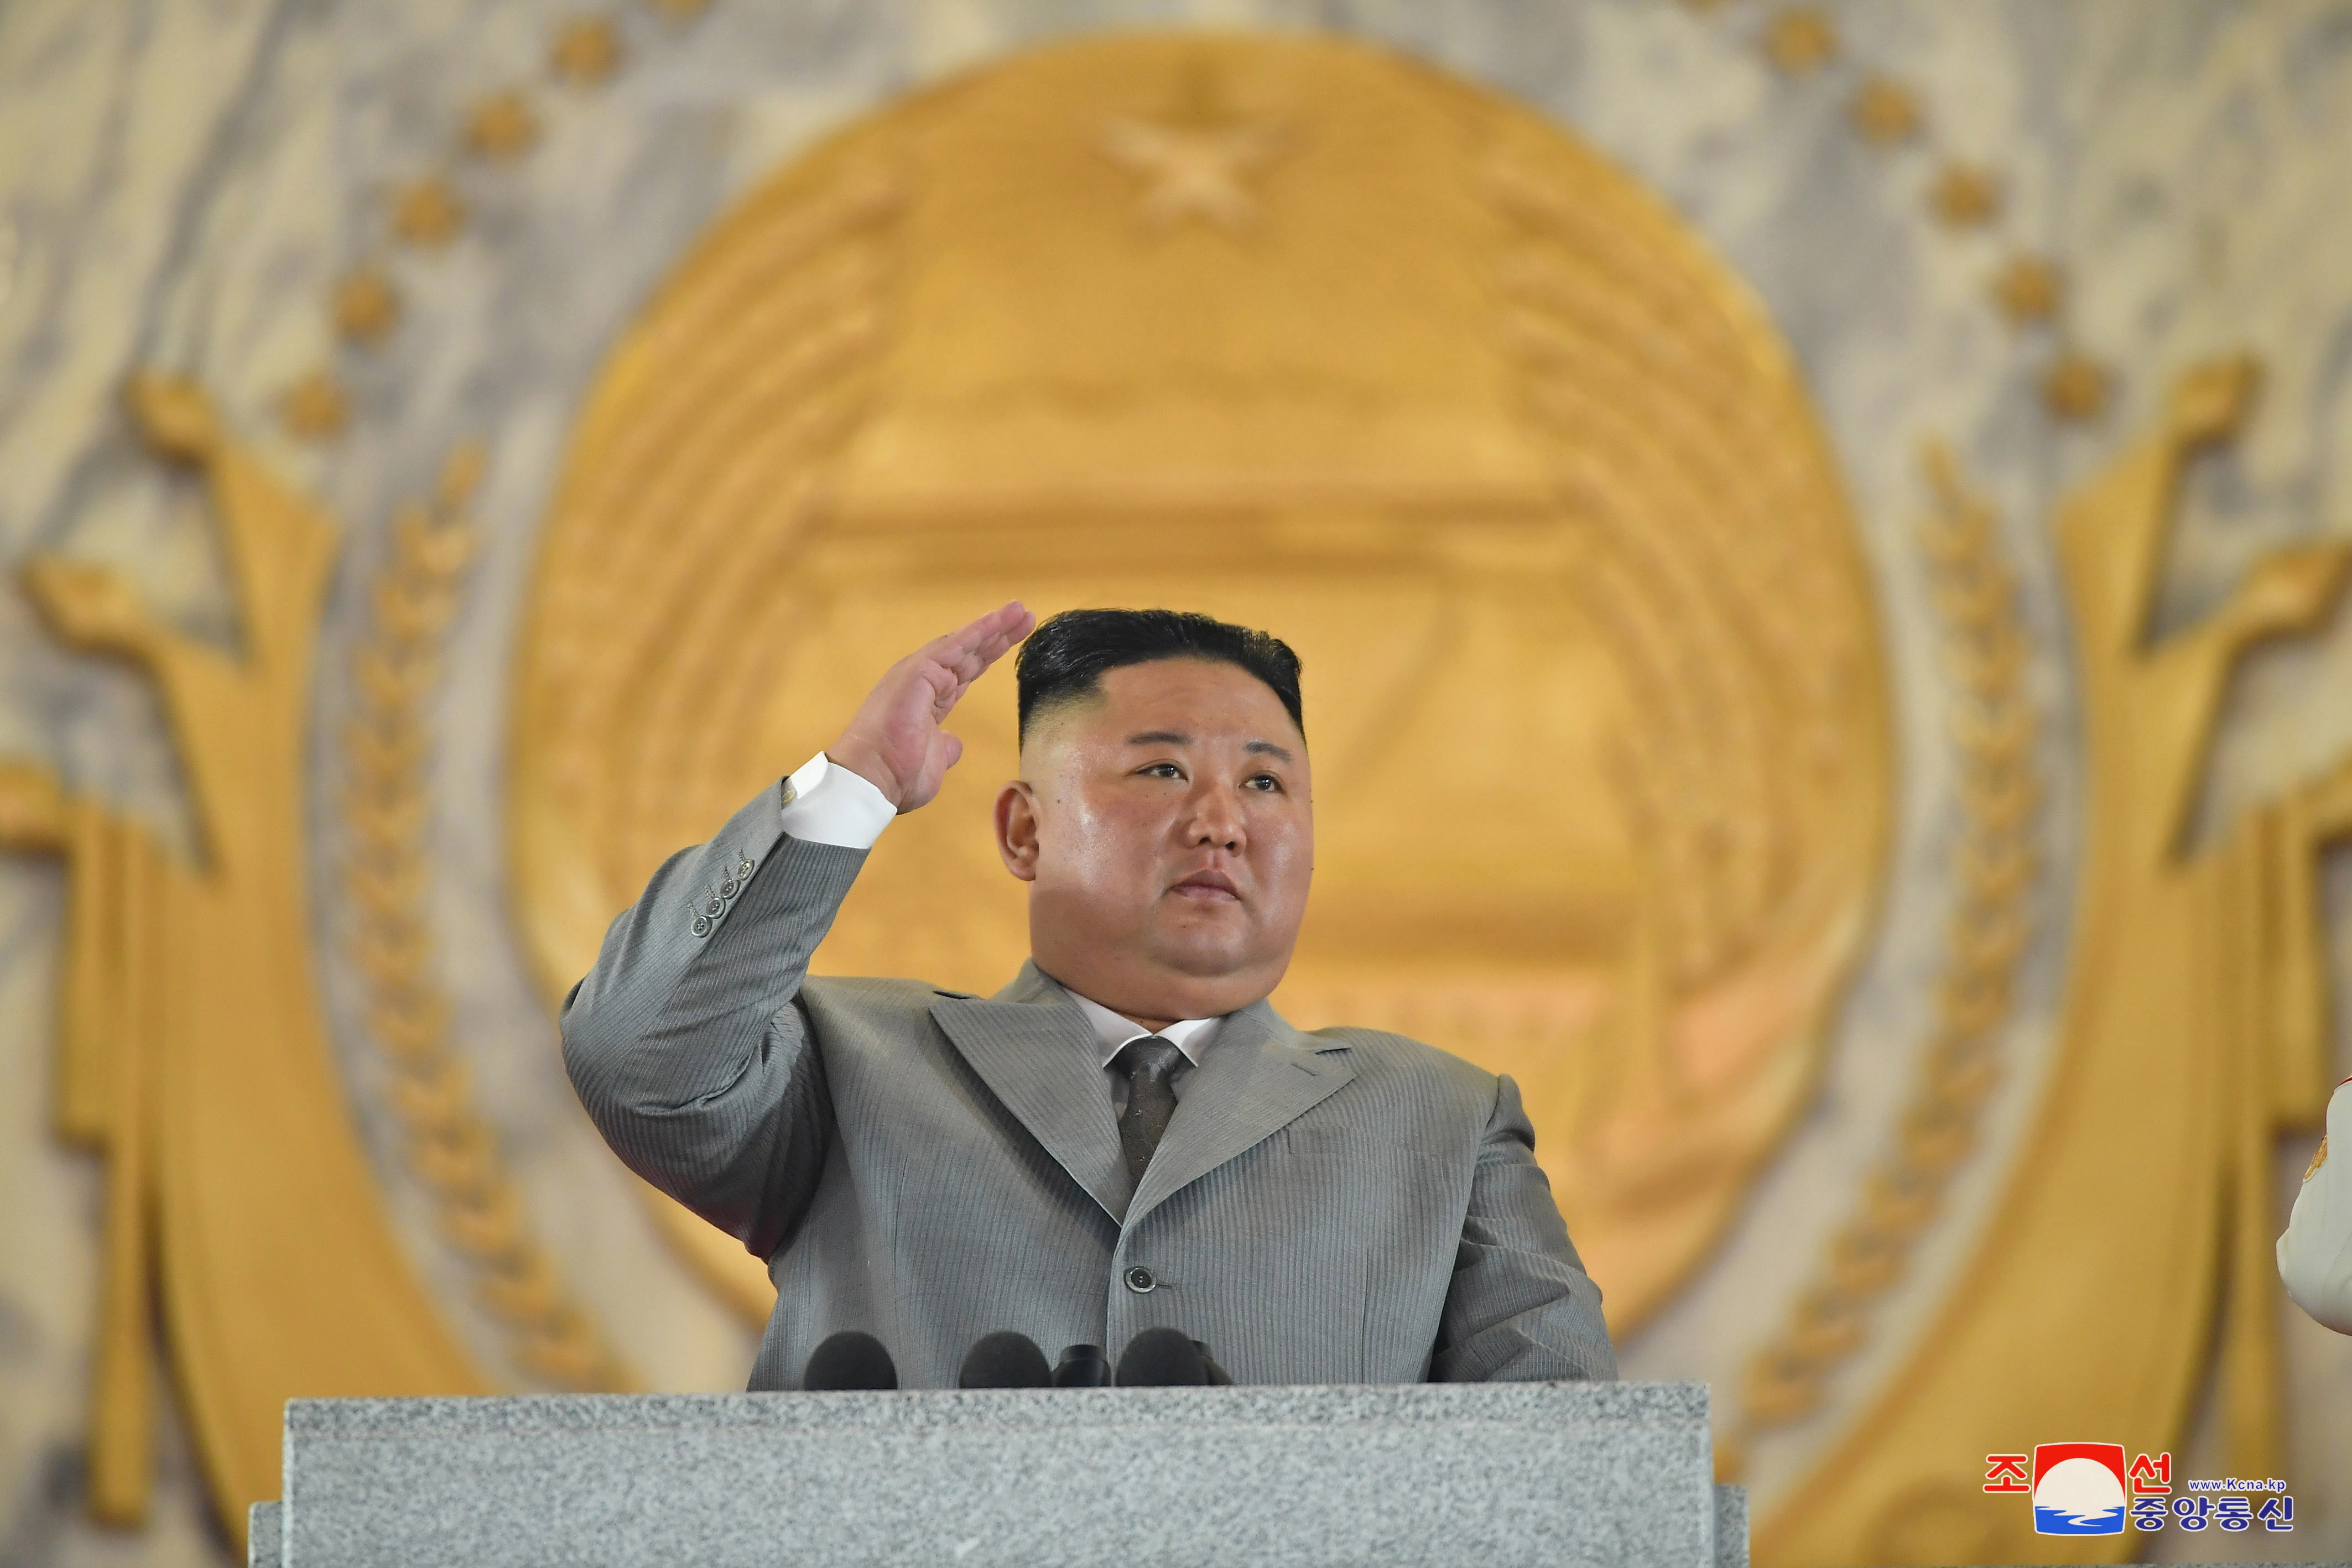 Kim Jong-un impulsa culto a su personalidad para promover nueva ideología que supere a sus antecesores